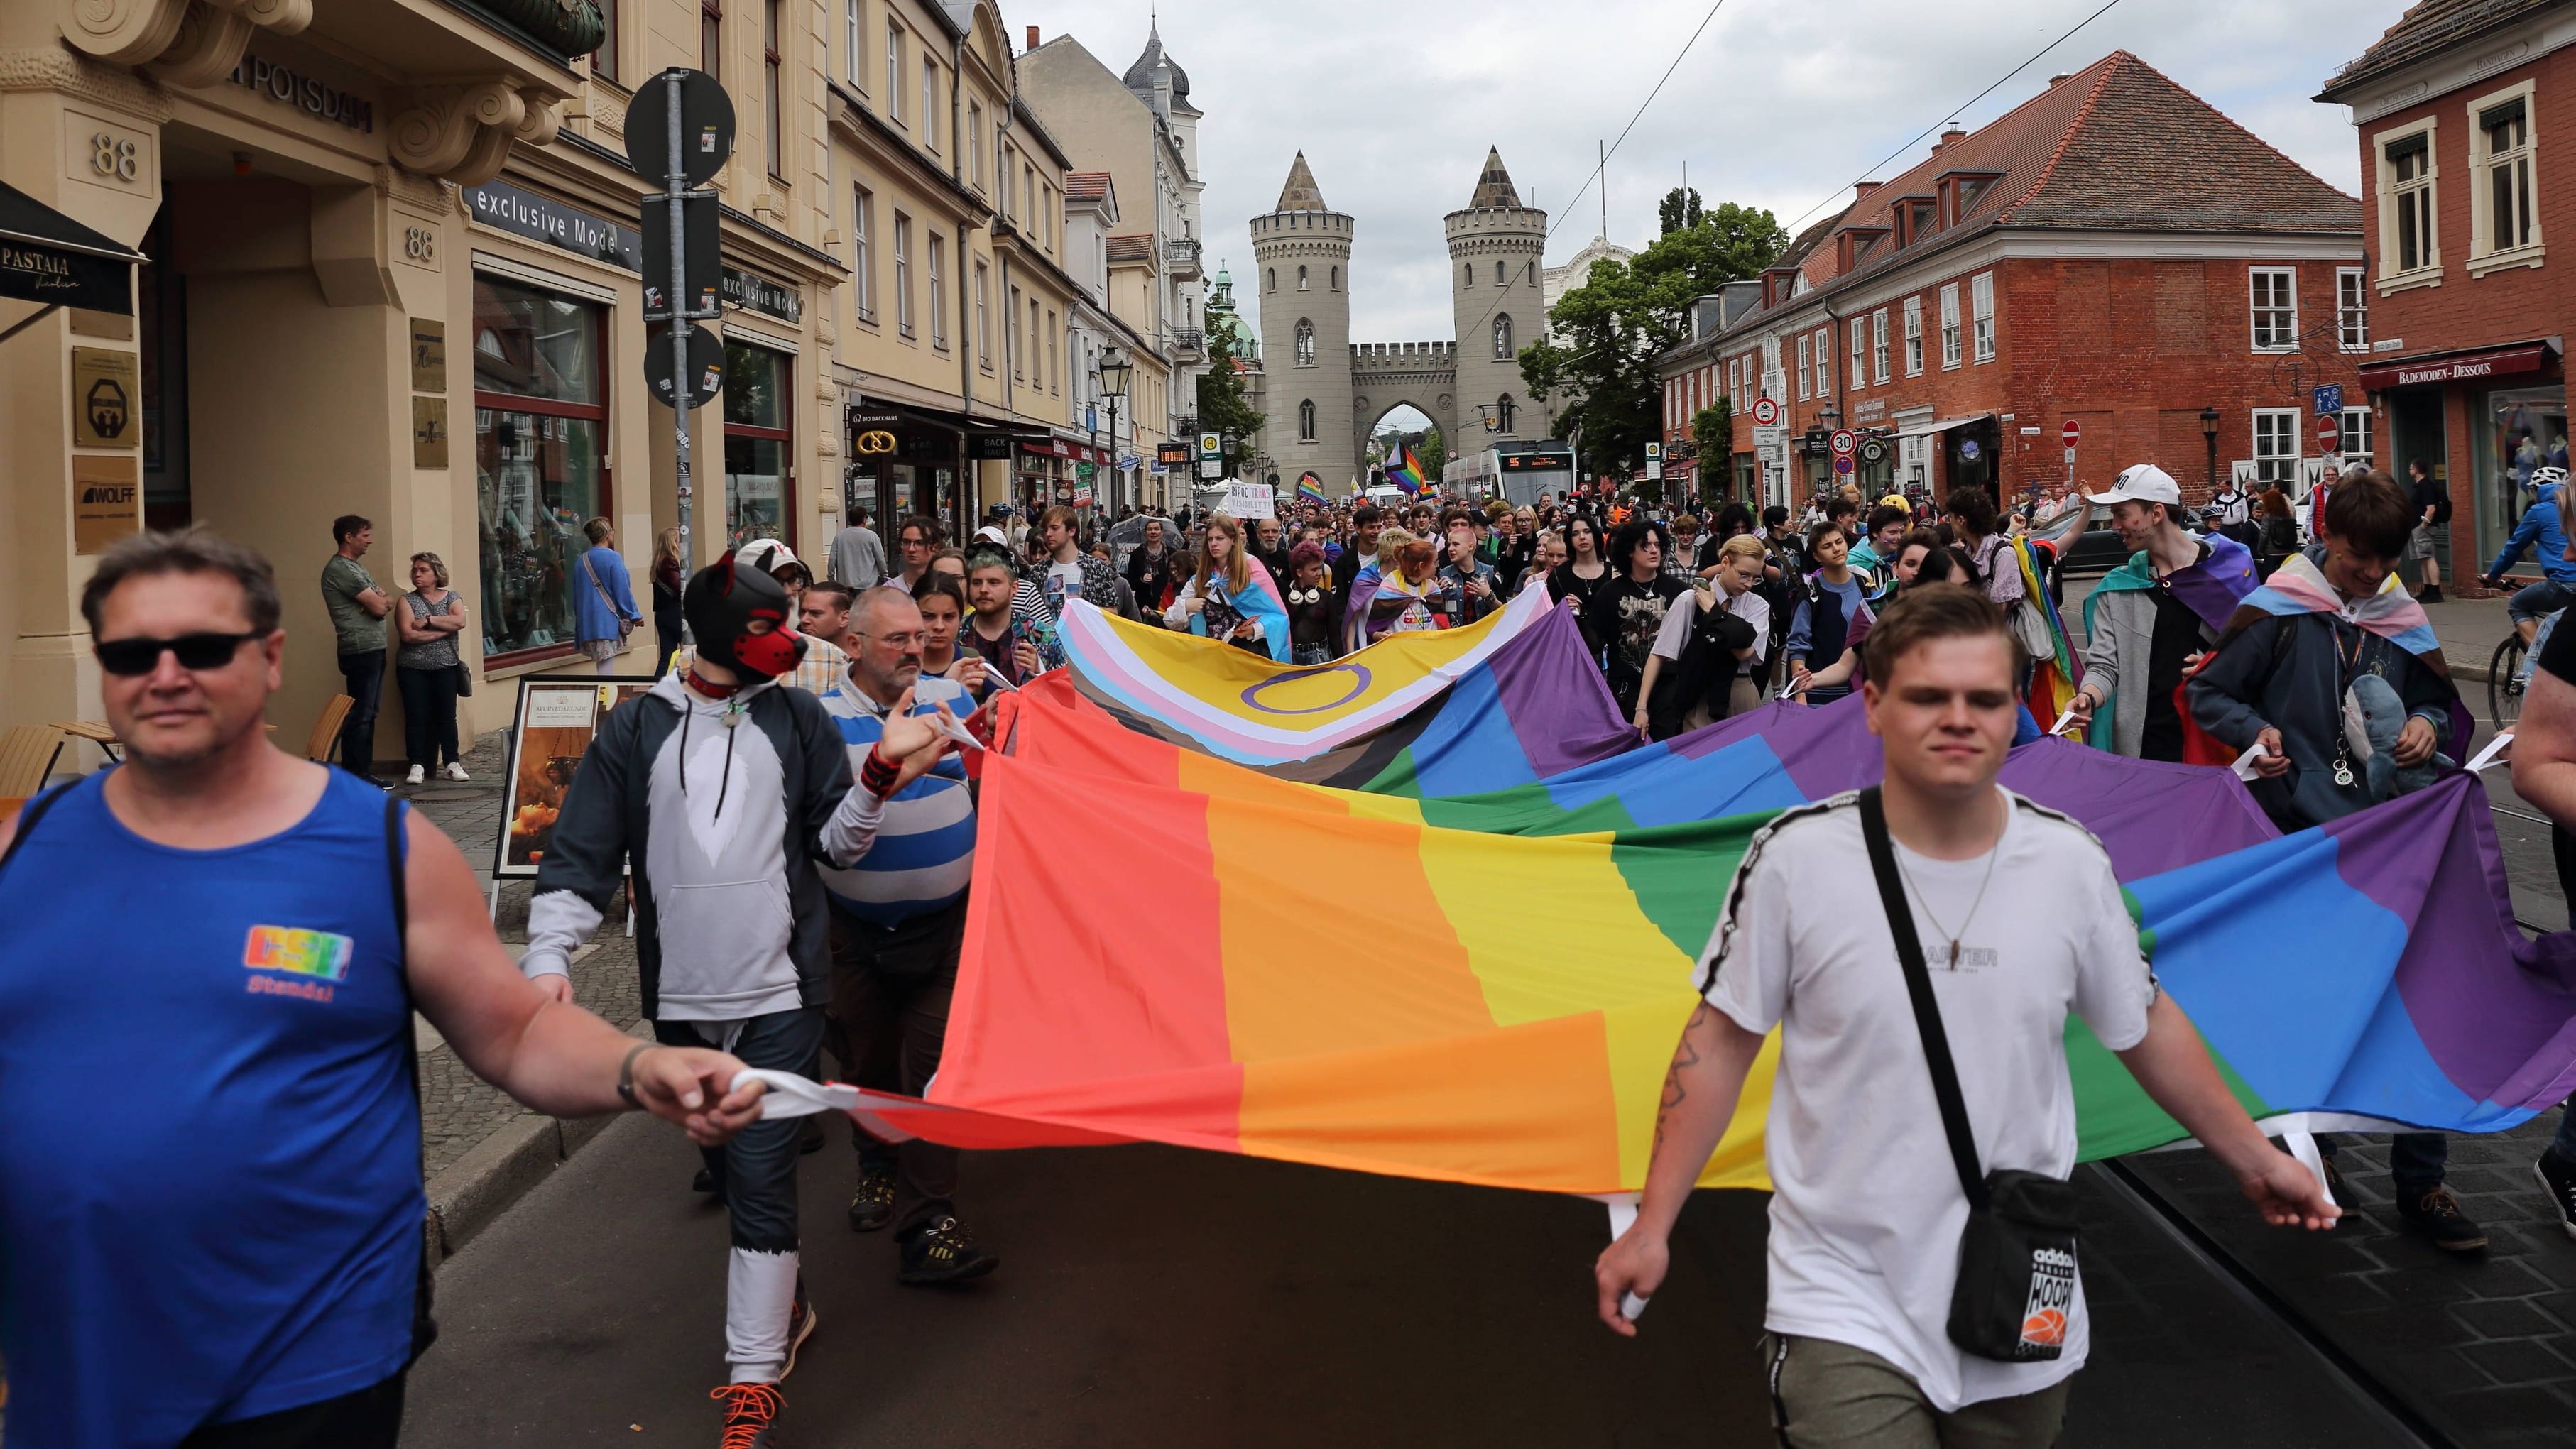 US-Regierung warnt vor weltweiten Terroranschlägen auf LGBTIQ+-Personen